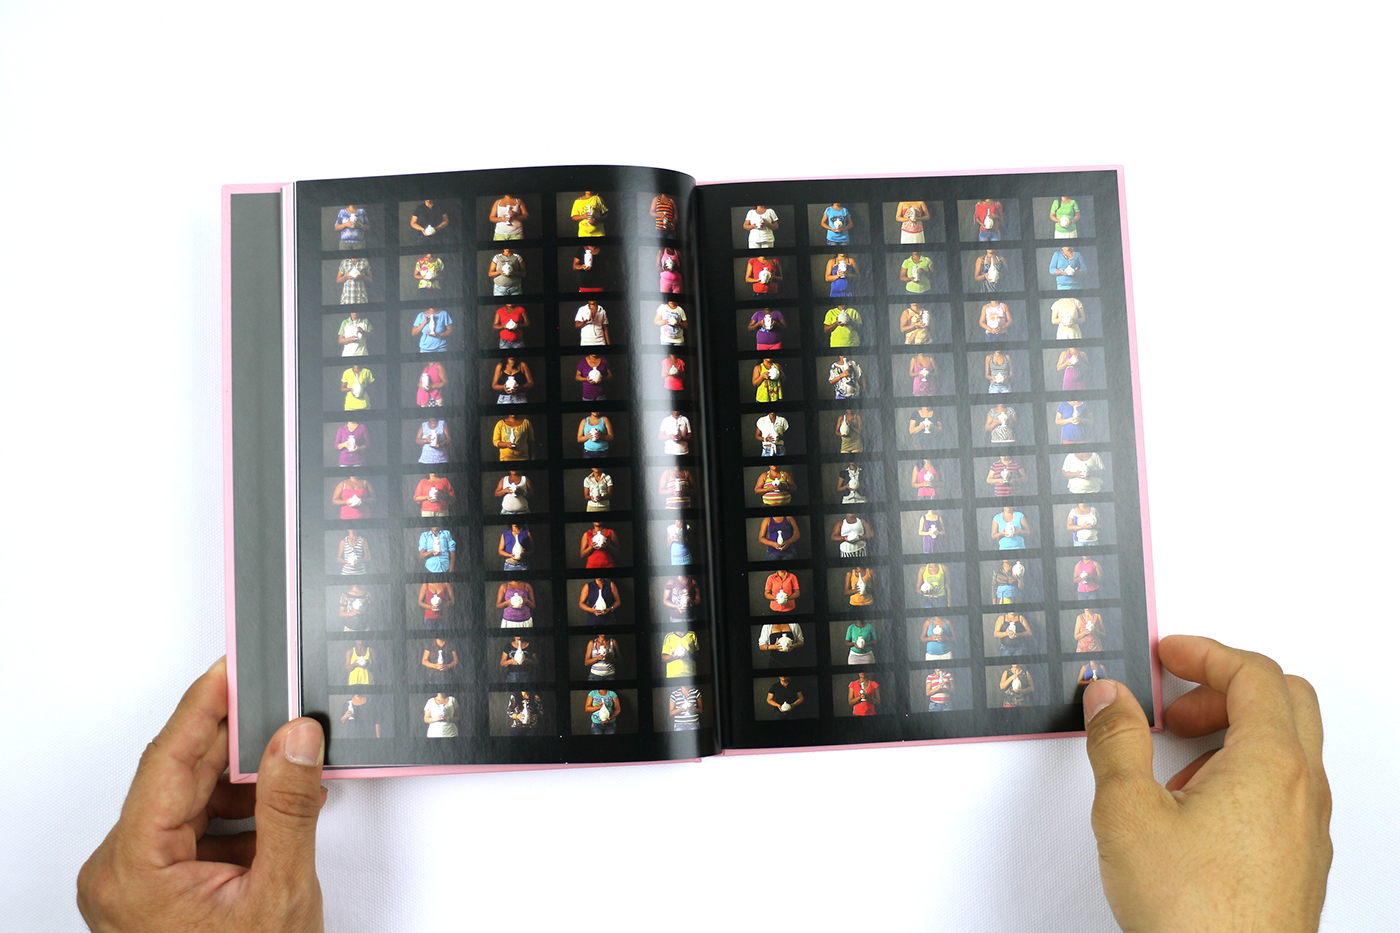 editorial art book artist design diseño libro Artista arte